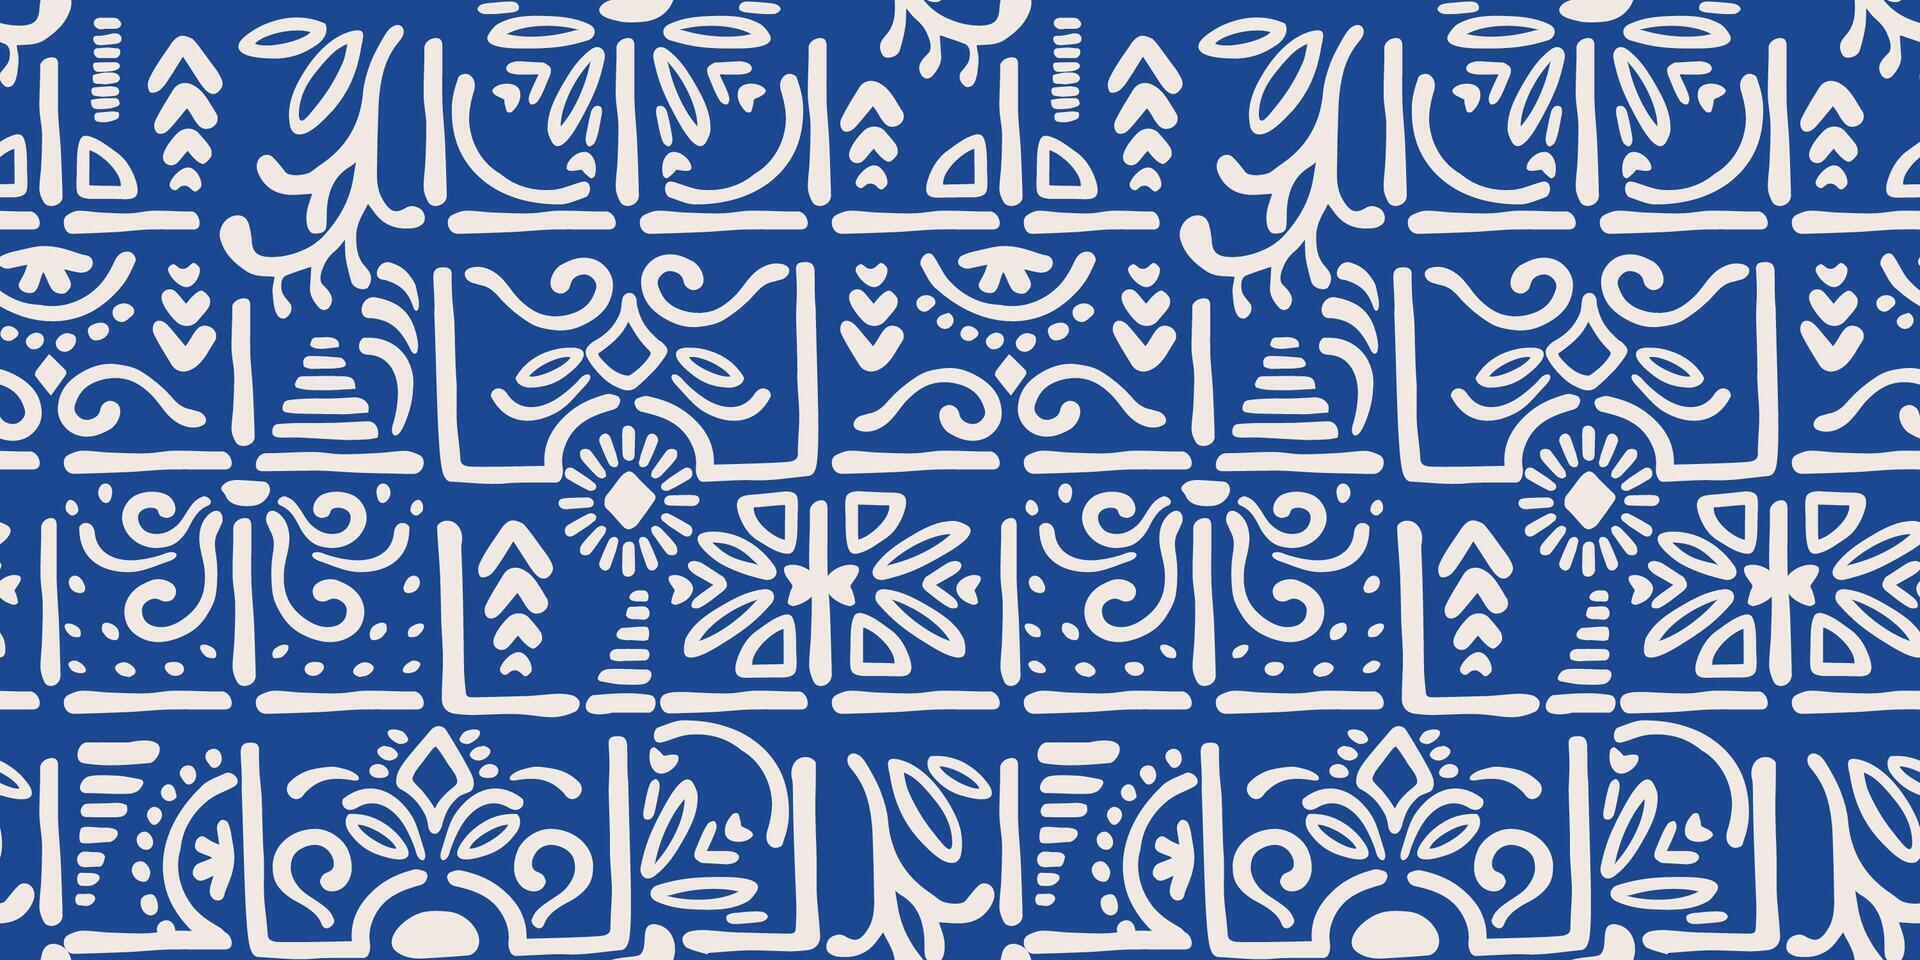 étnico azul desatado padrões com azulejo elementos. moderno abstrato Projeto para papel, cobrir, tecido, interior decoração e de outros usar vetor